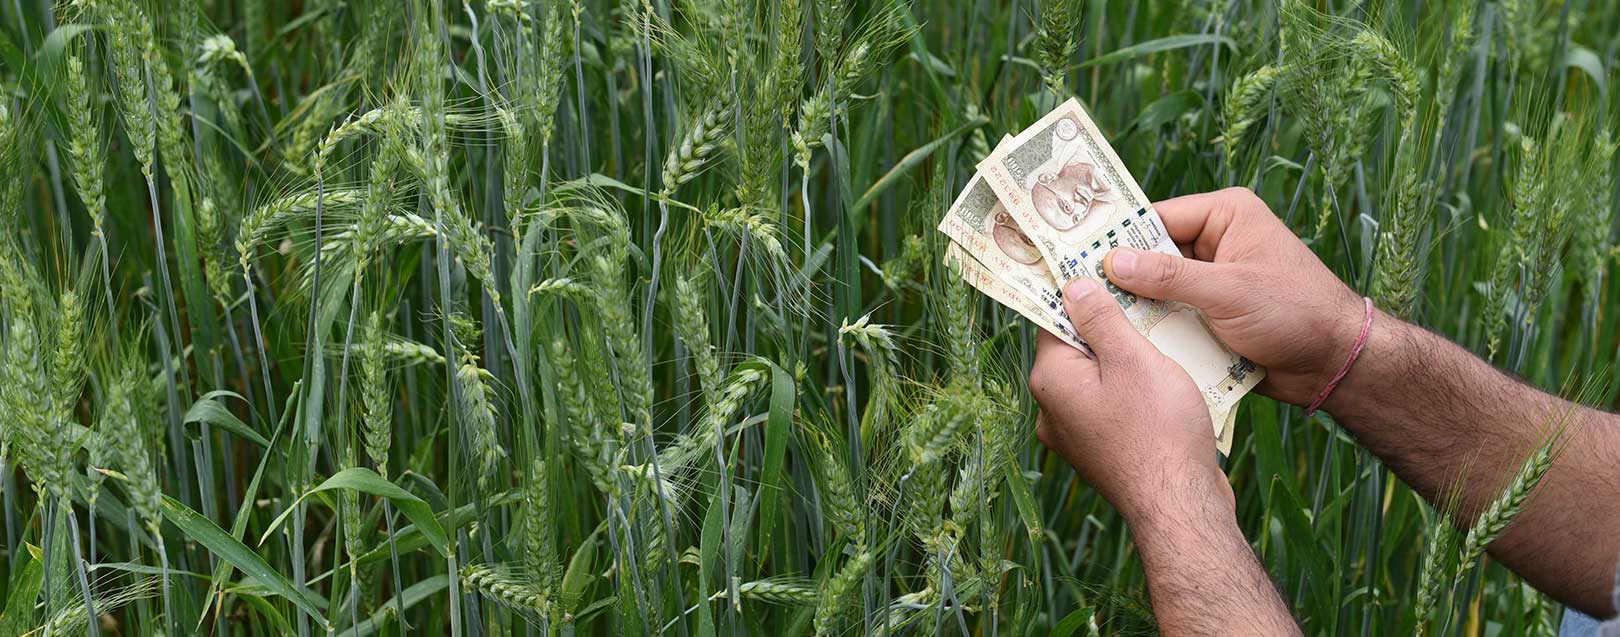 Govt announces measures to help farmers post-demonitisation